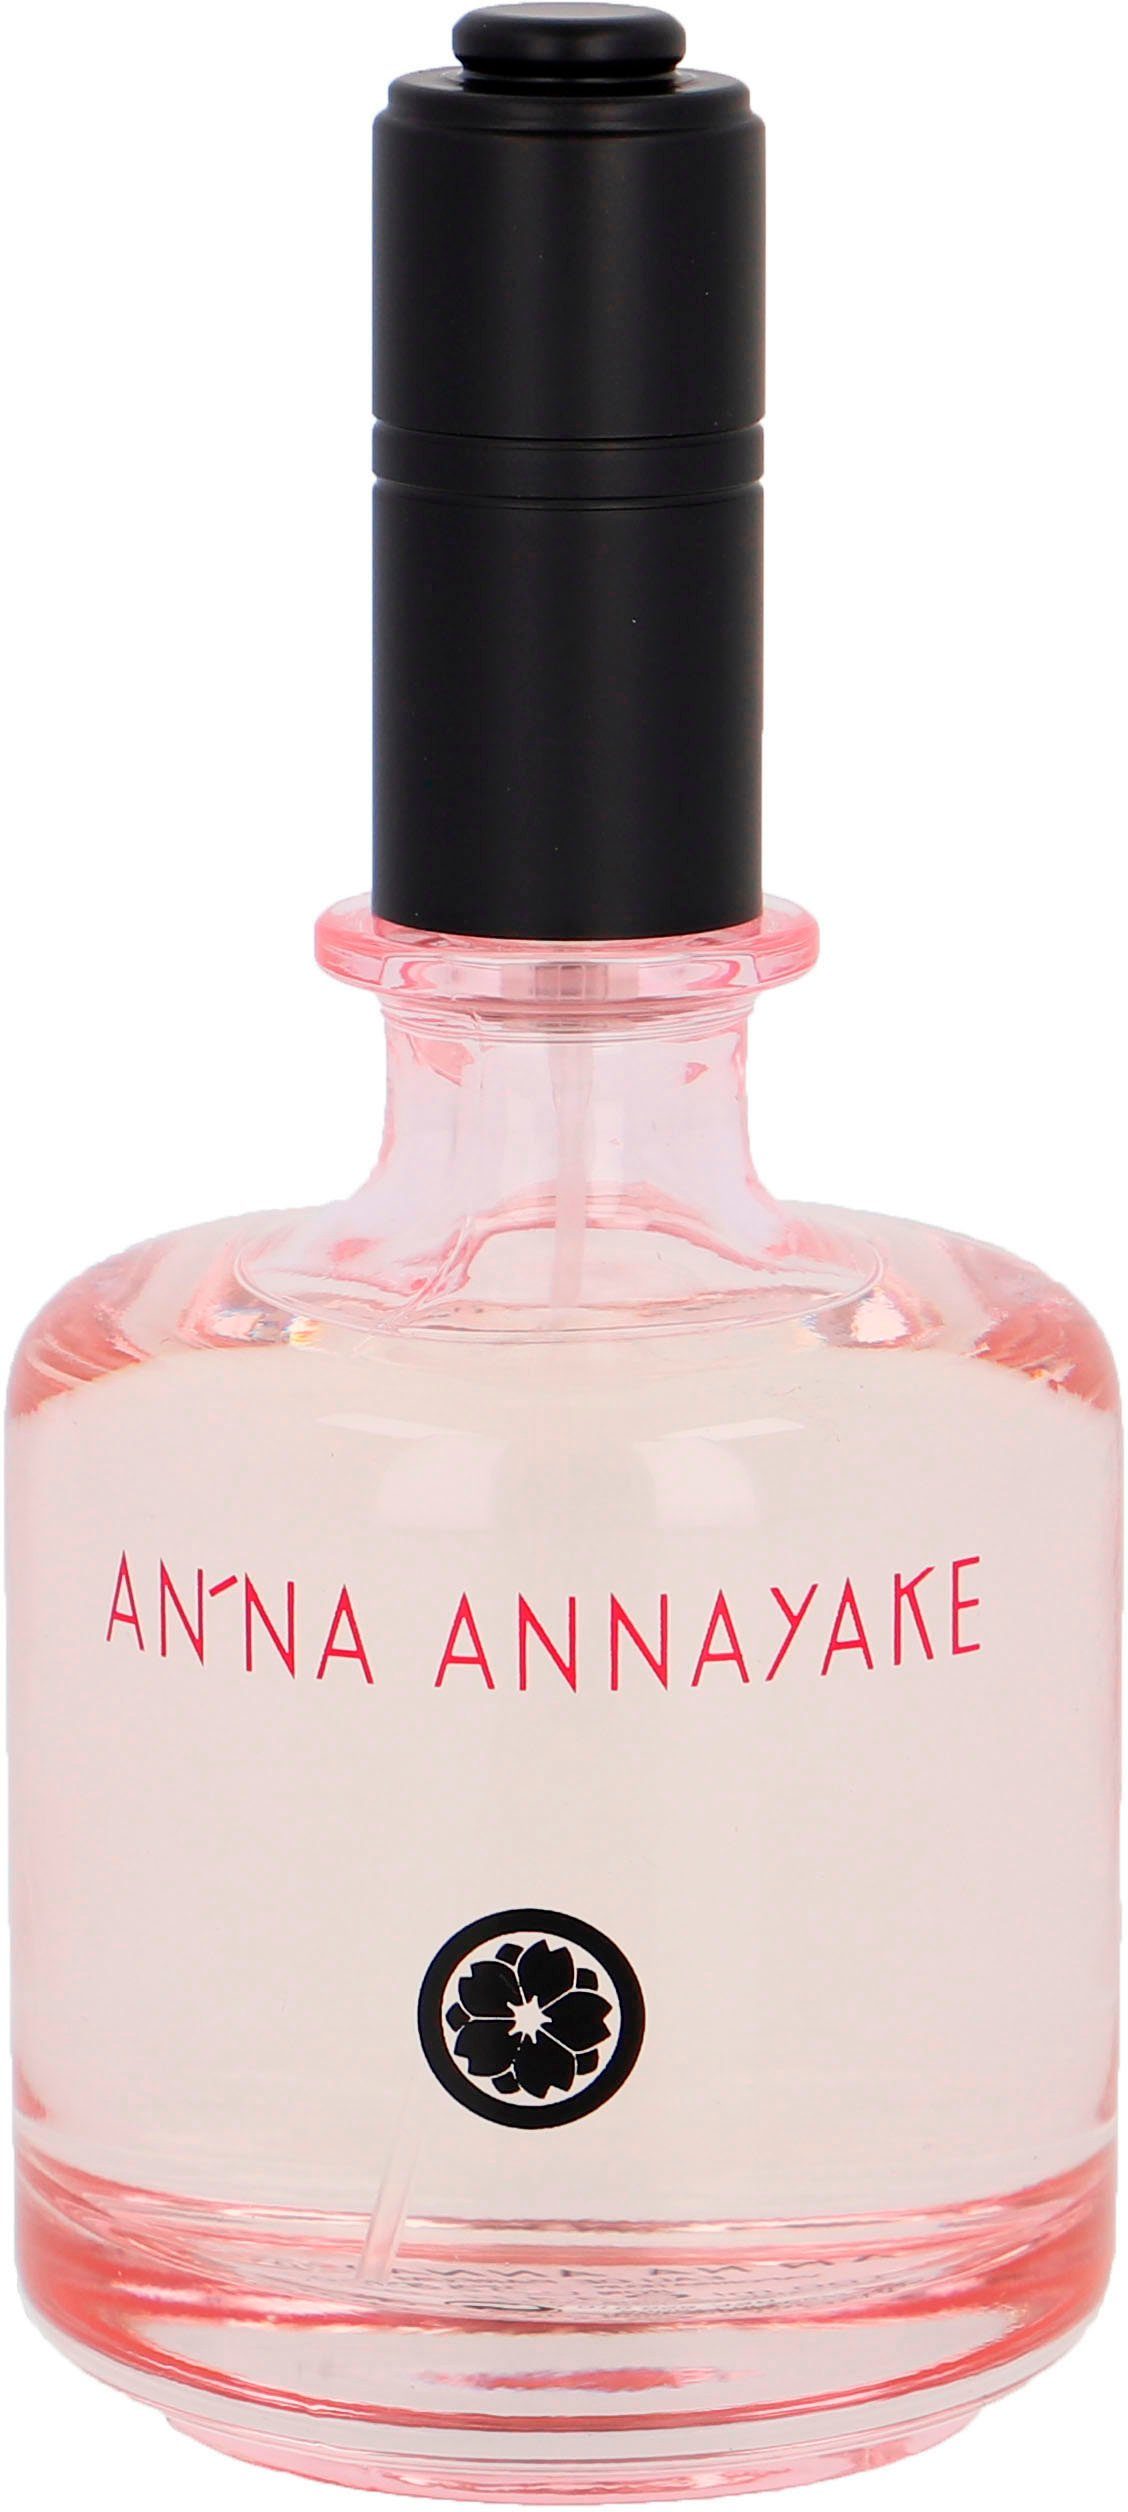 Eau Annayake de An'na Parfum ANNAYAKE